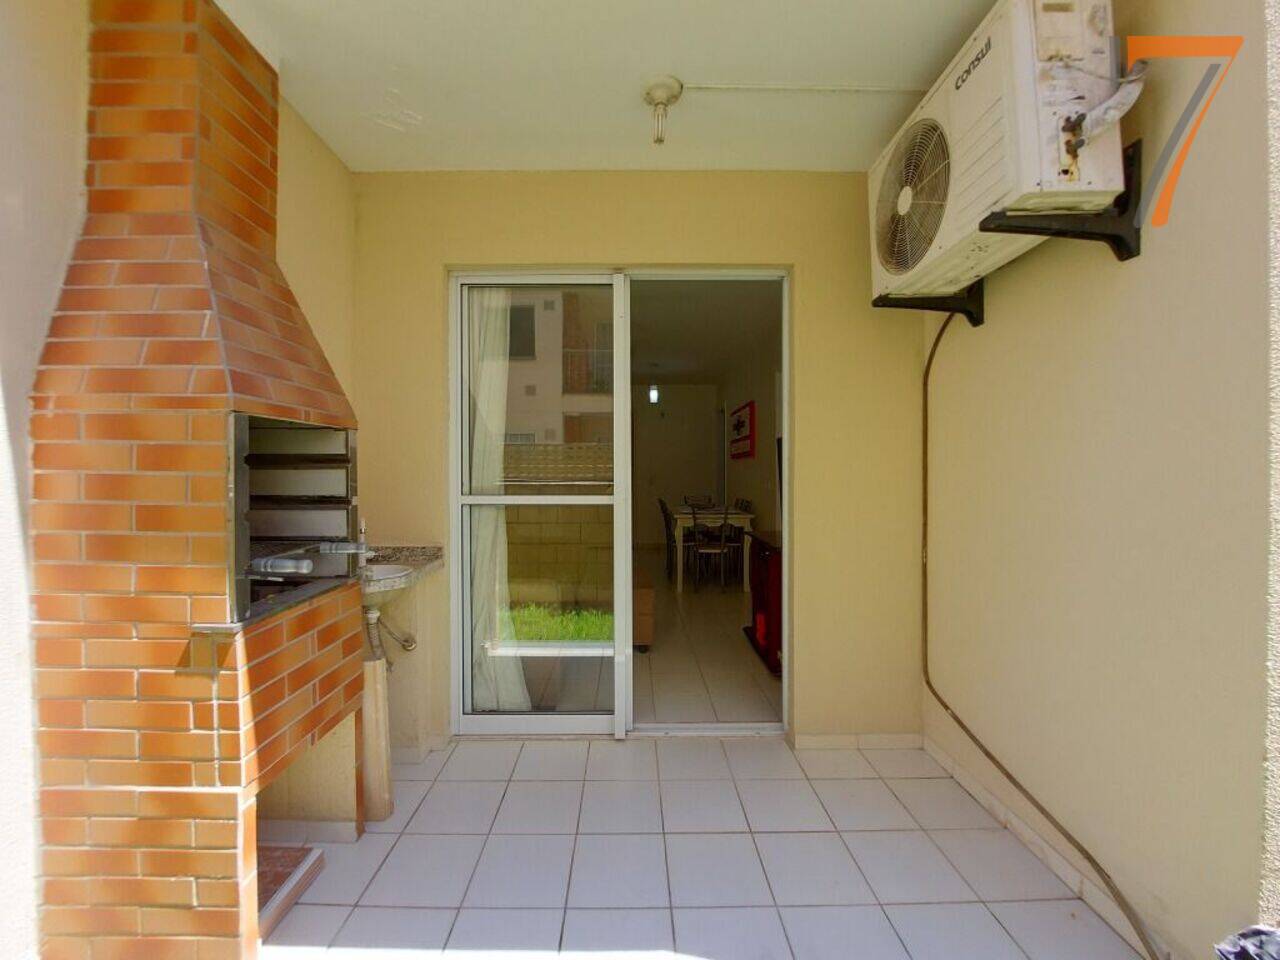 Apartamento Serraria, São José - SC